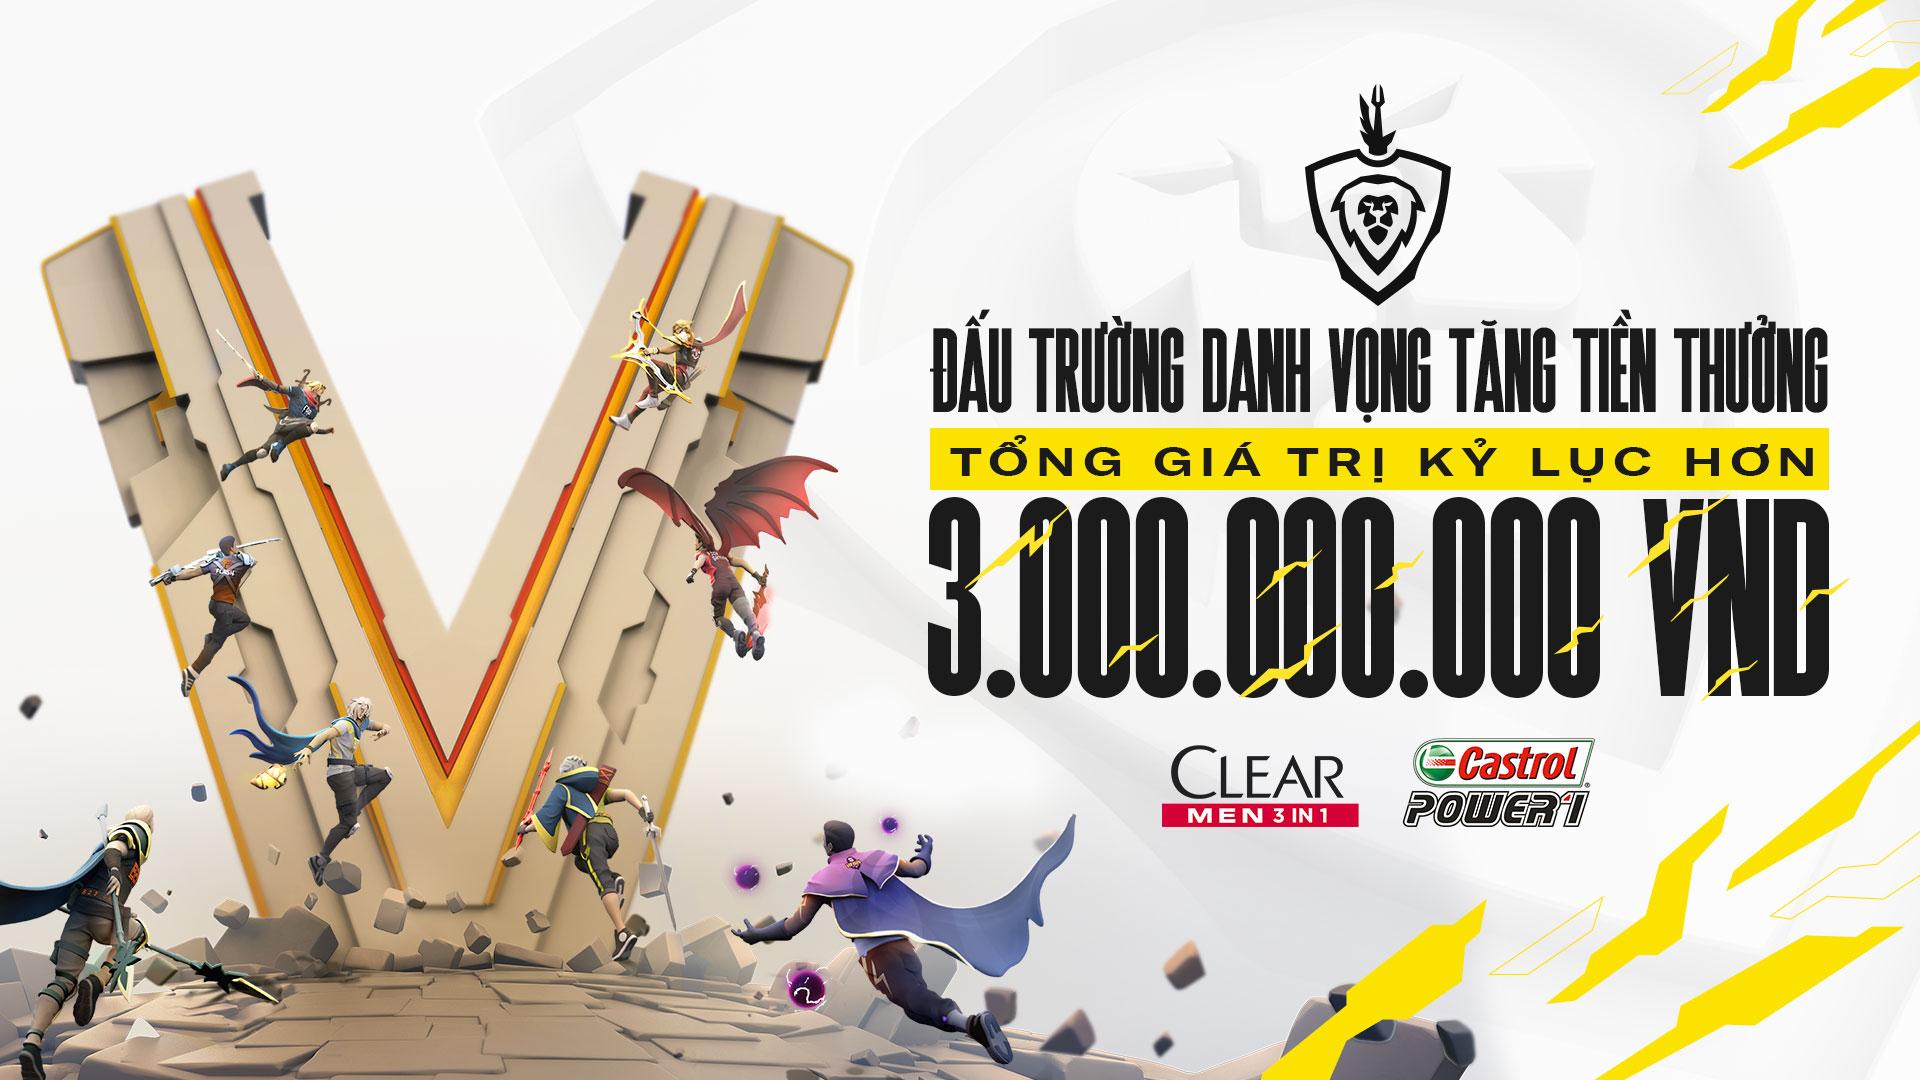 ĐTDV mùa Xuân 2021 nâng tiền thưởng lên 3 tỷ VNĐ, giải Esports &quot;xịn xò&quot; nhất Việt Nam là đây - Ảnh 1.